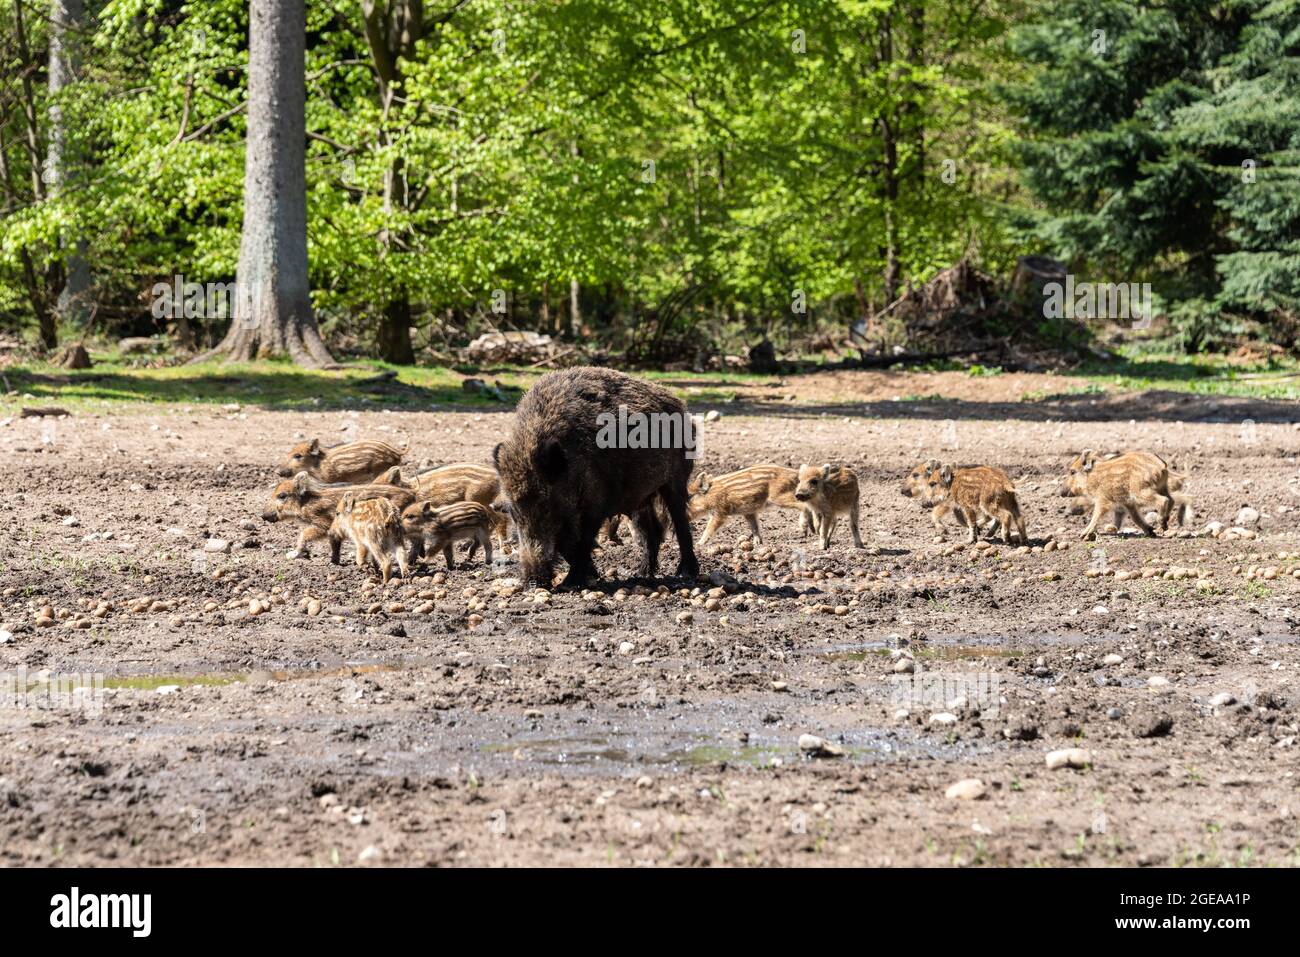 Der Erlebnis Wald Trappenkamp bietet auf mehr als 100 Hektar Wildgehege und Erlebnispfade ein einmaliges Naturerlebnis, hier eine Rotte Wildschweine Foto de stock